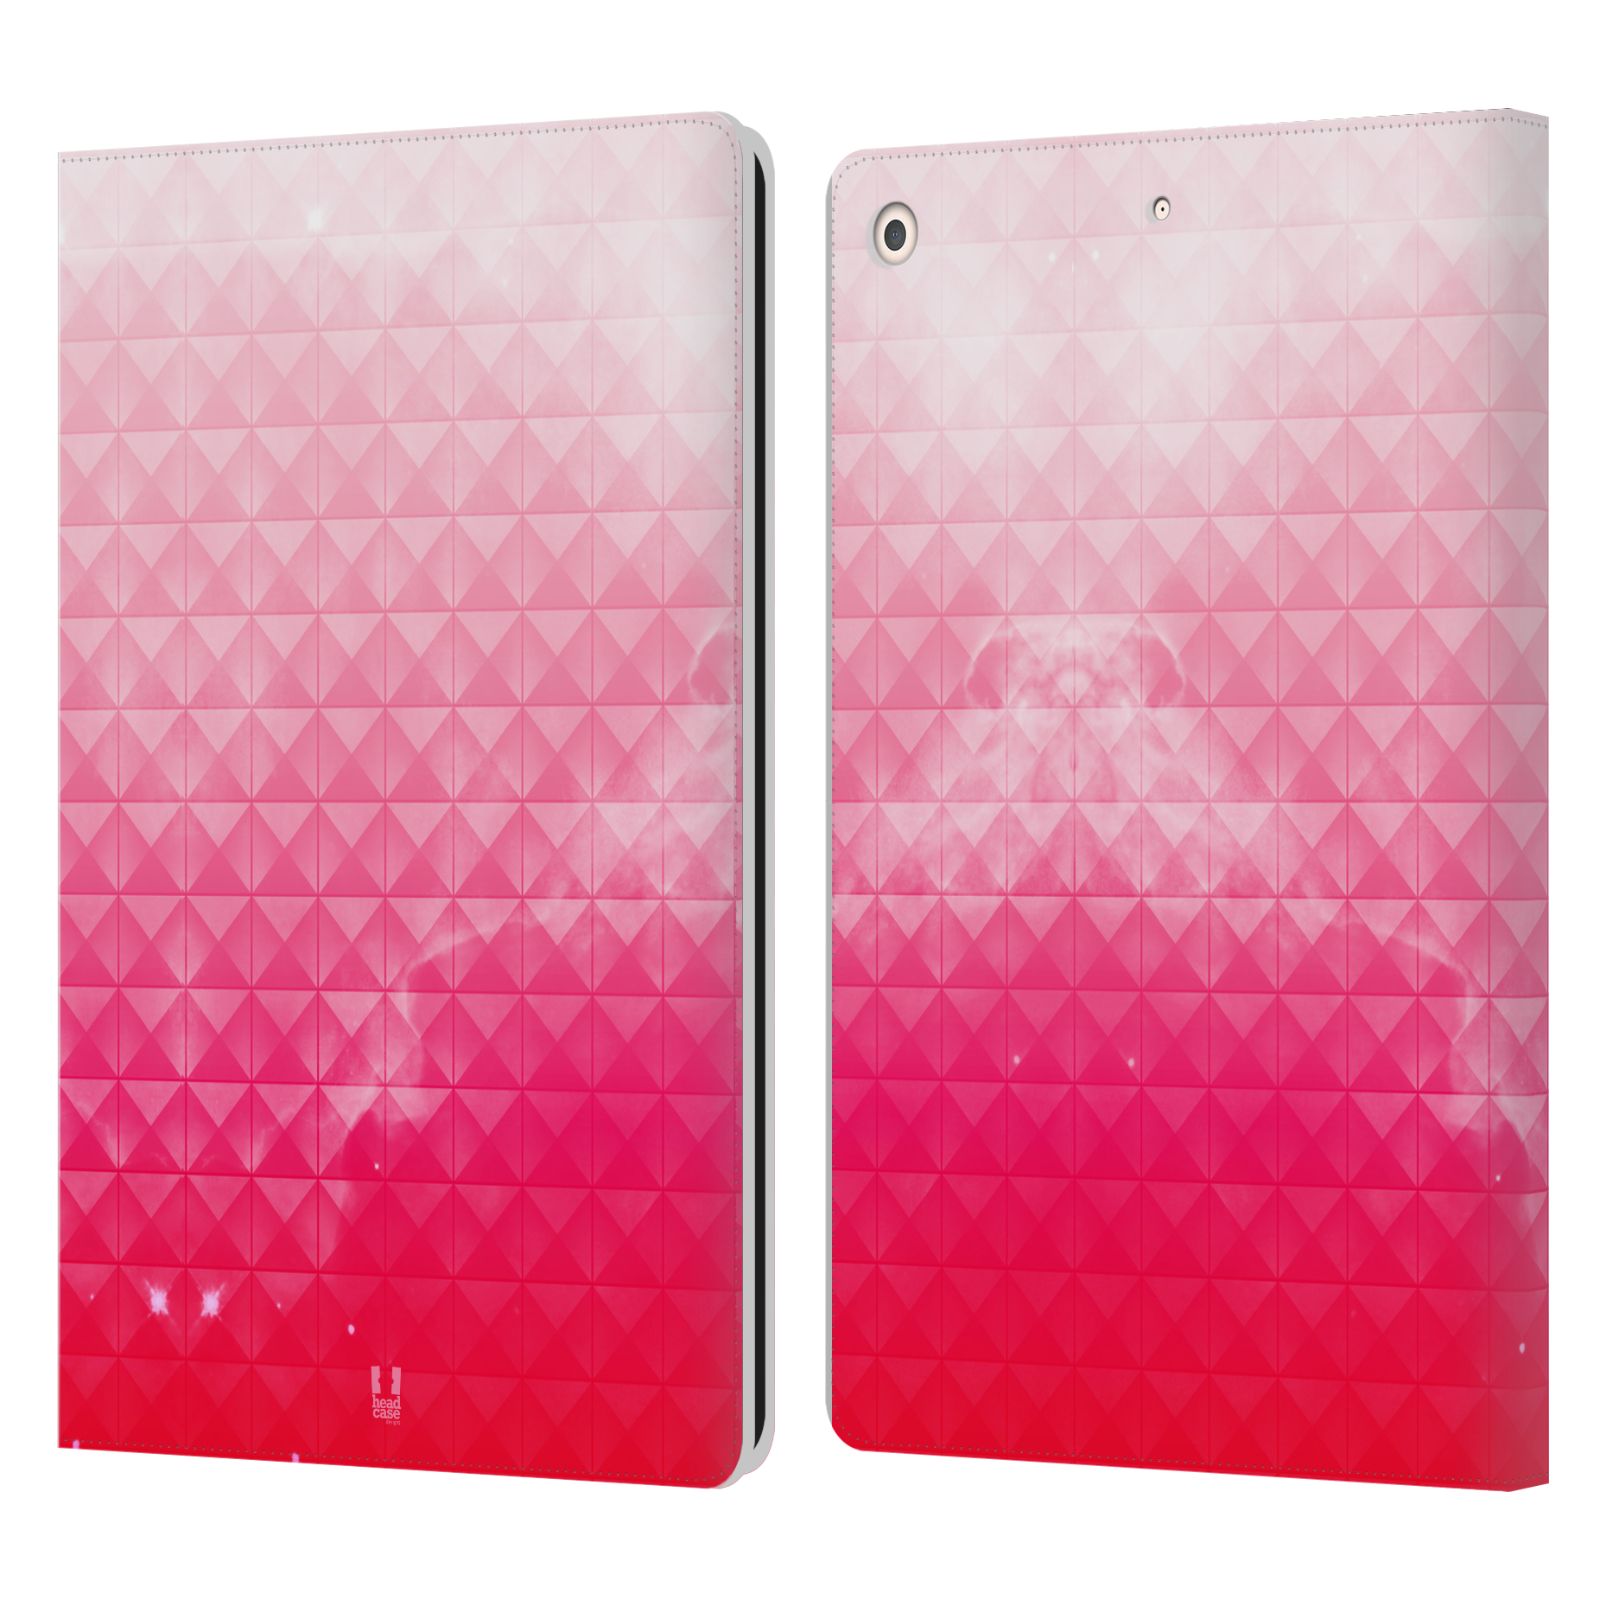 Pouzdro pro tablet Apple Ipad 10.2 - HEAD CASE - barevná vesmírná mlhovina růžová jahoda